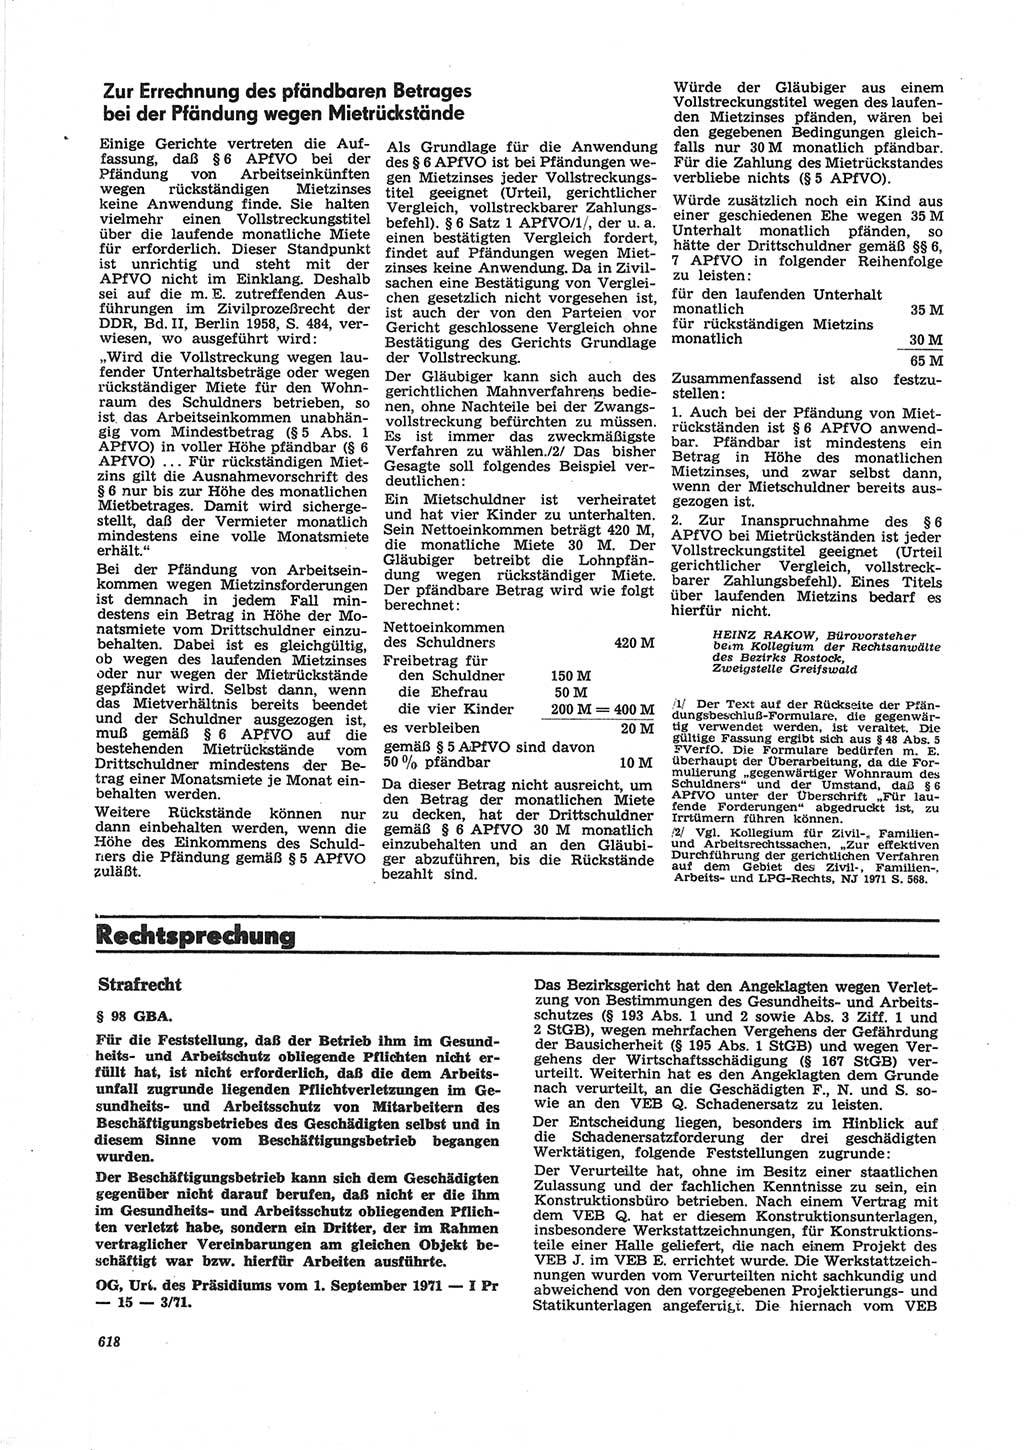 Neue Justiz (NJ), Zeitschrift für Recht und Rechtswissenschaft [Deutsche Demokratische Republik (DDR)], 25. Jahrgang 1971, Seite 618 (NJ DDR 1971, S. 618)